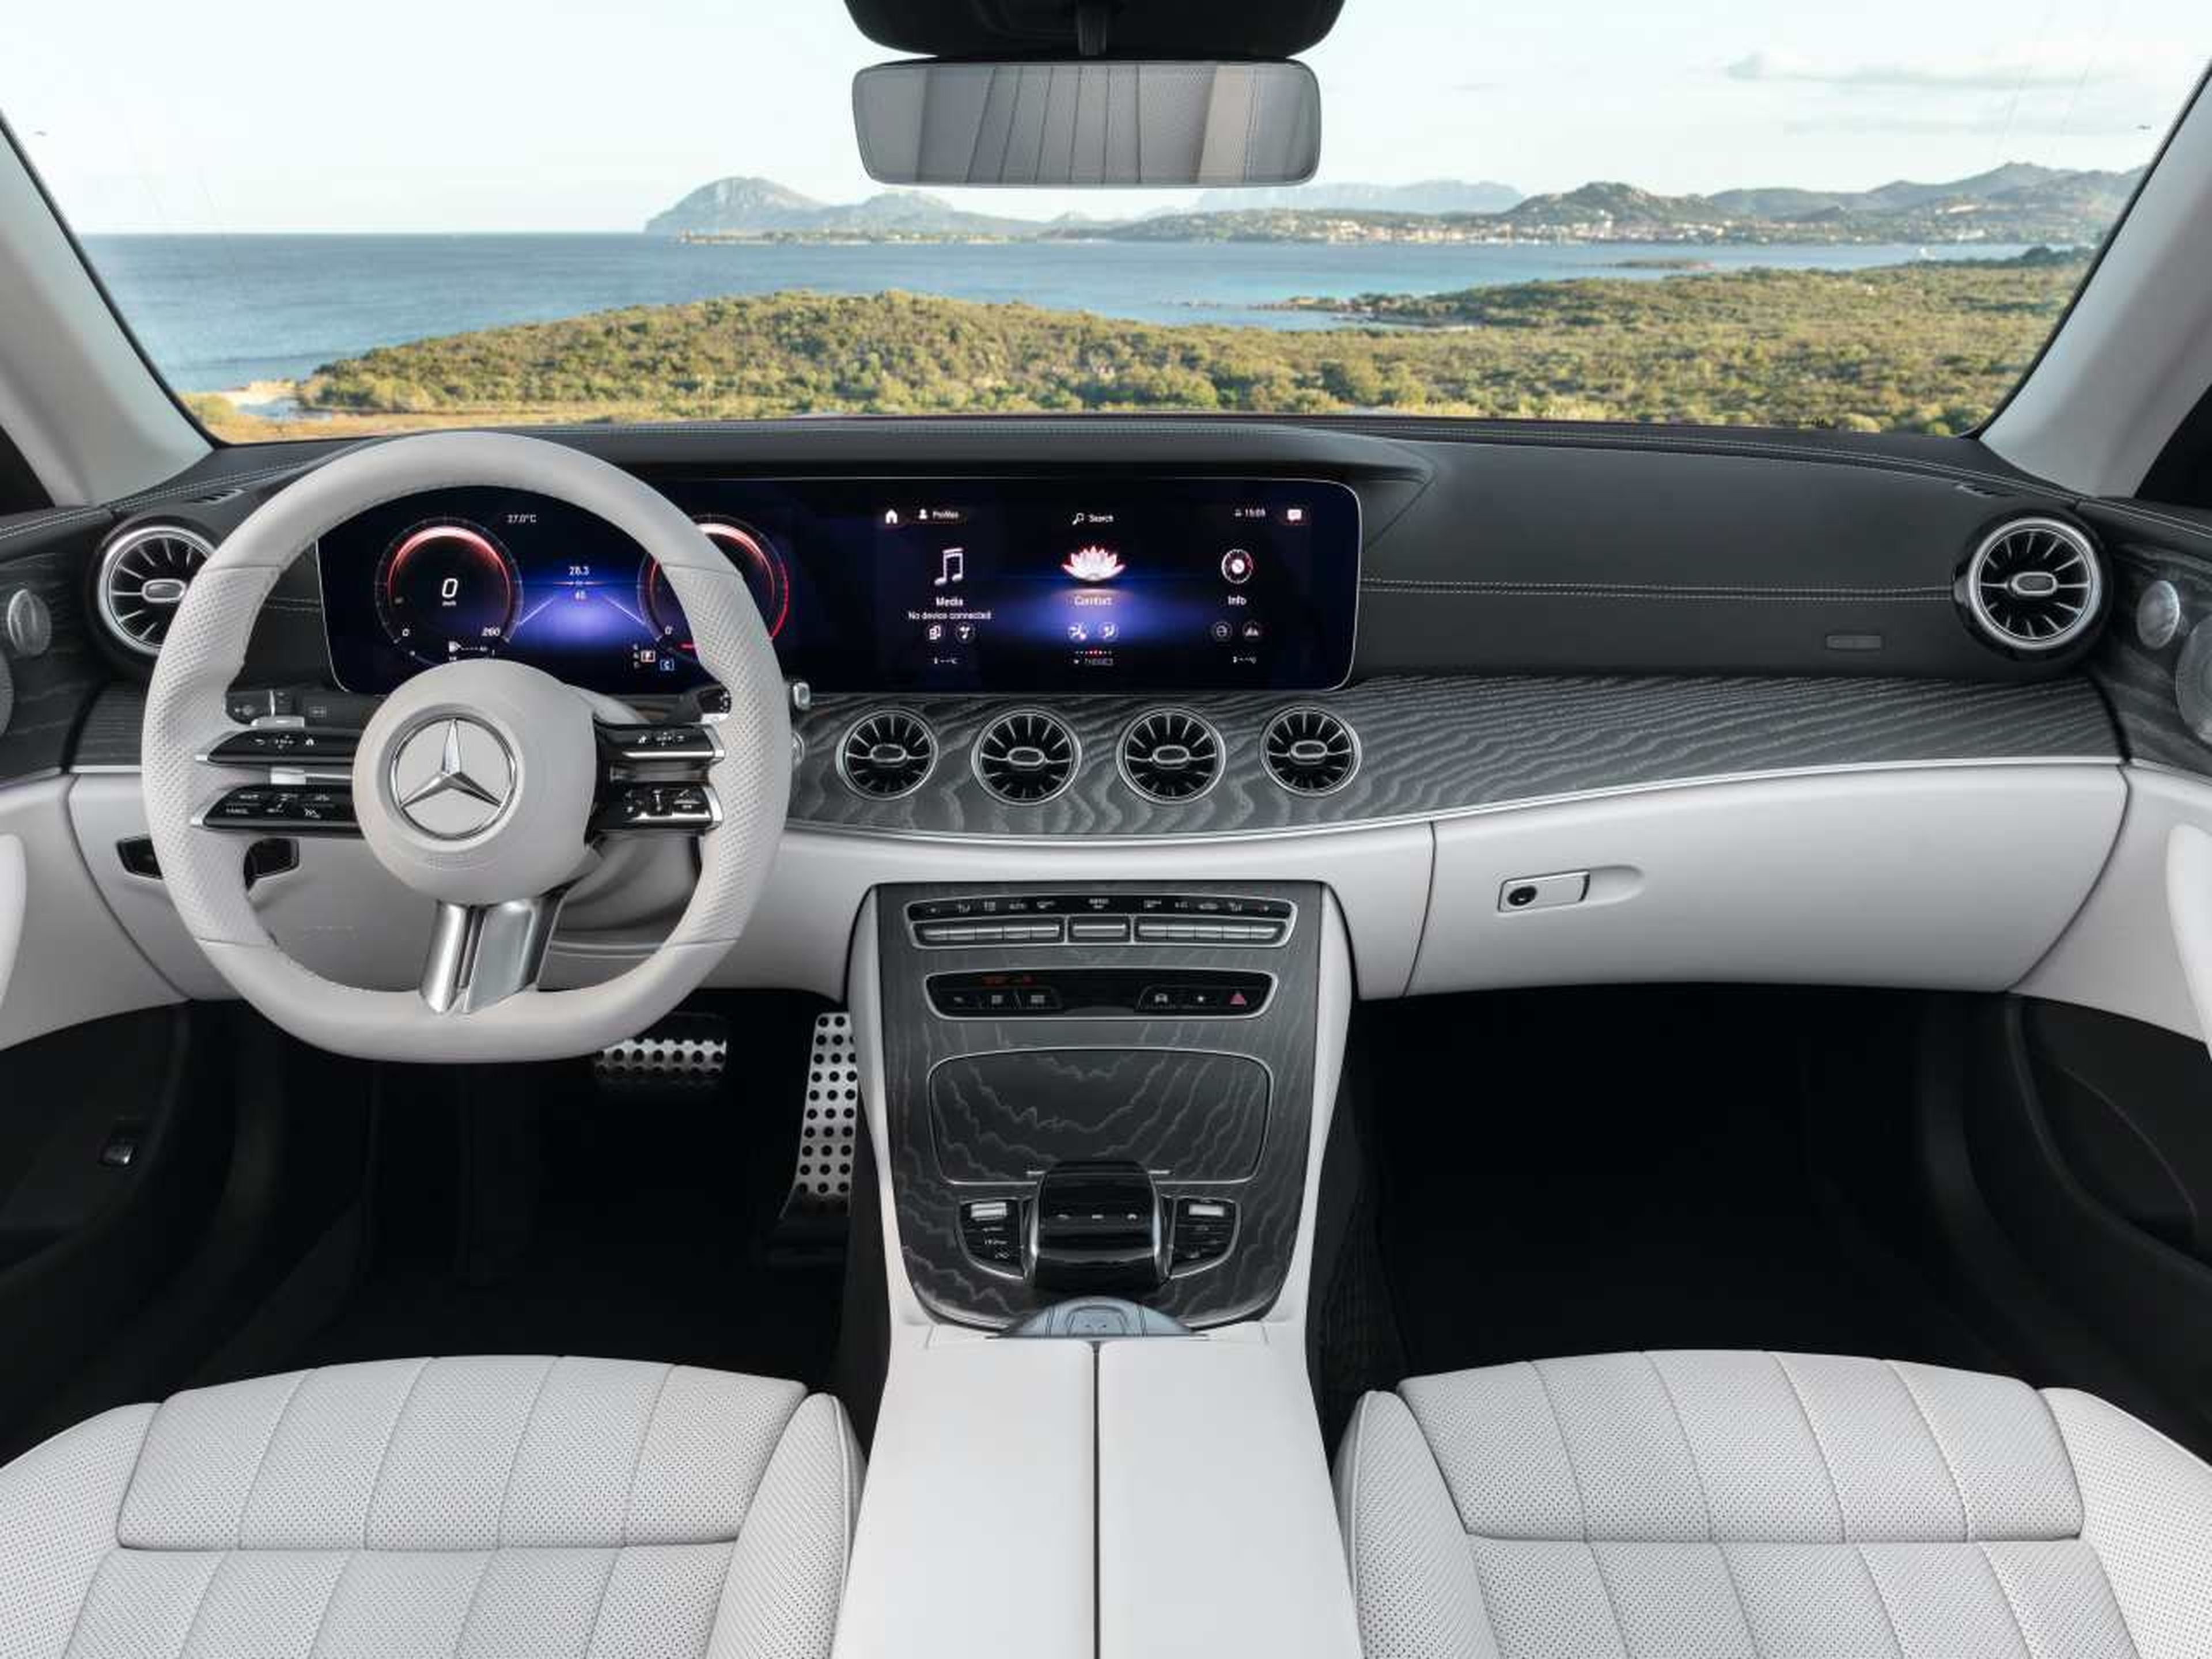 Mercedes Clase E Cabrio interior